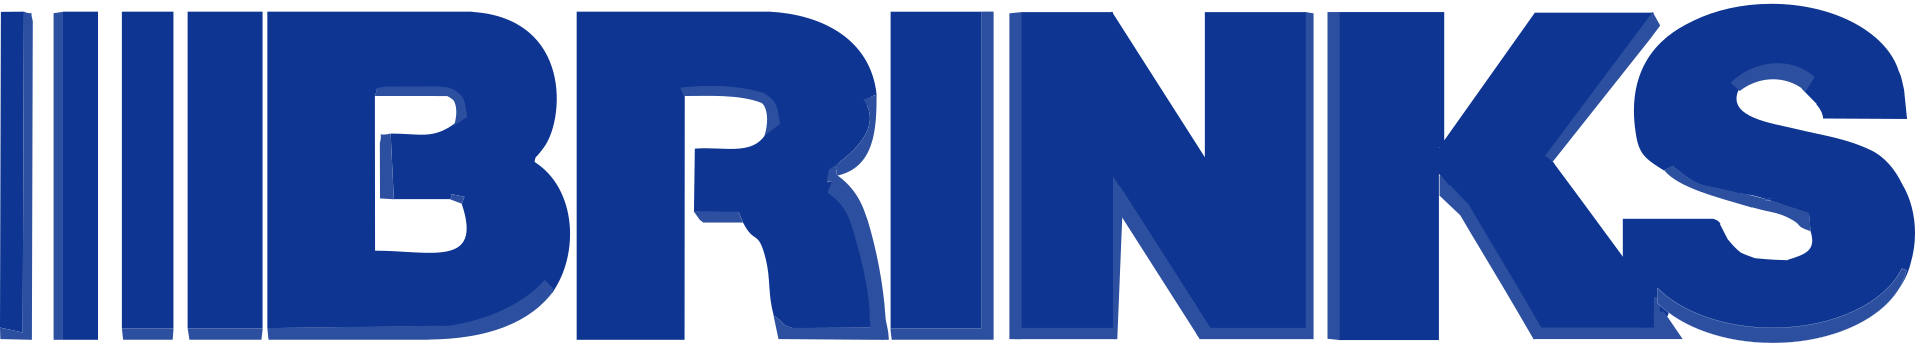 Brink's Brand Logo